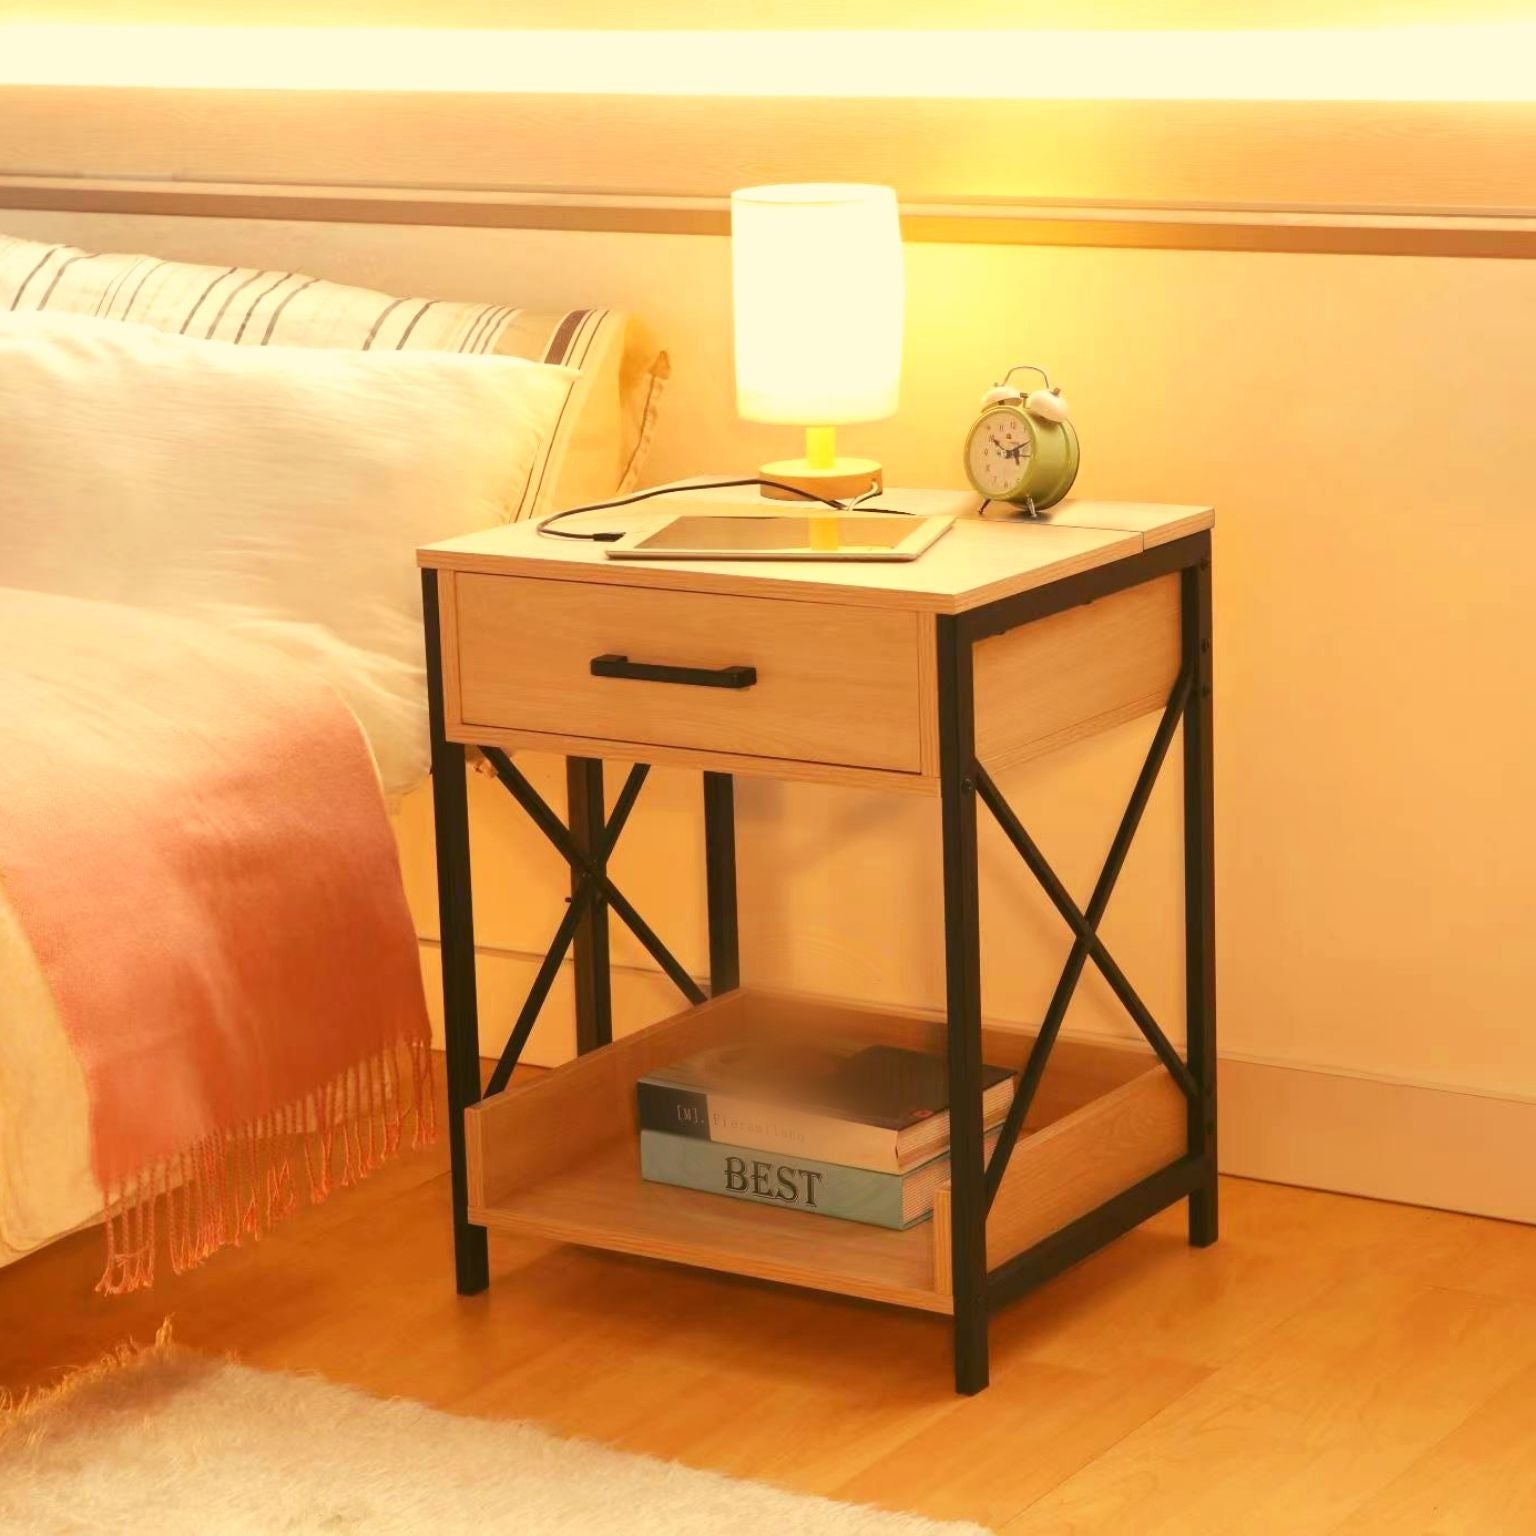 zeina nightstand bedside pedestal